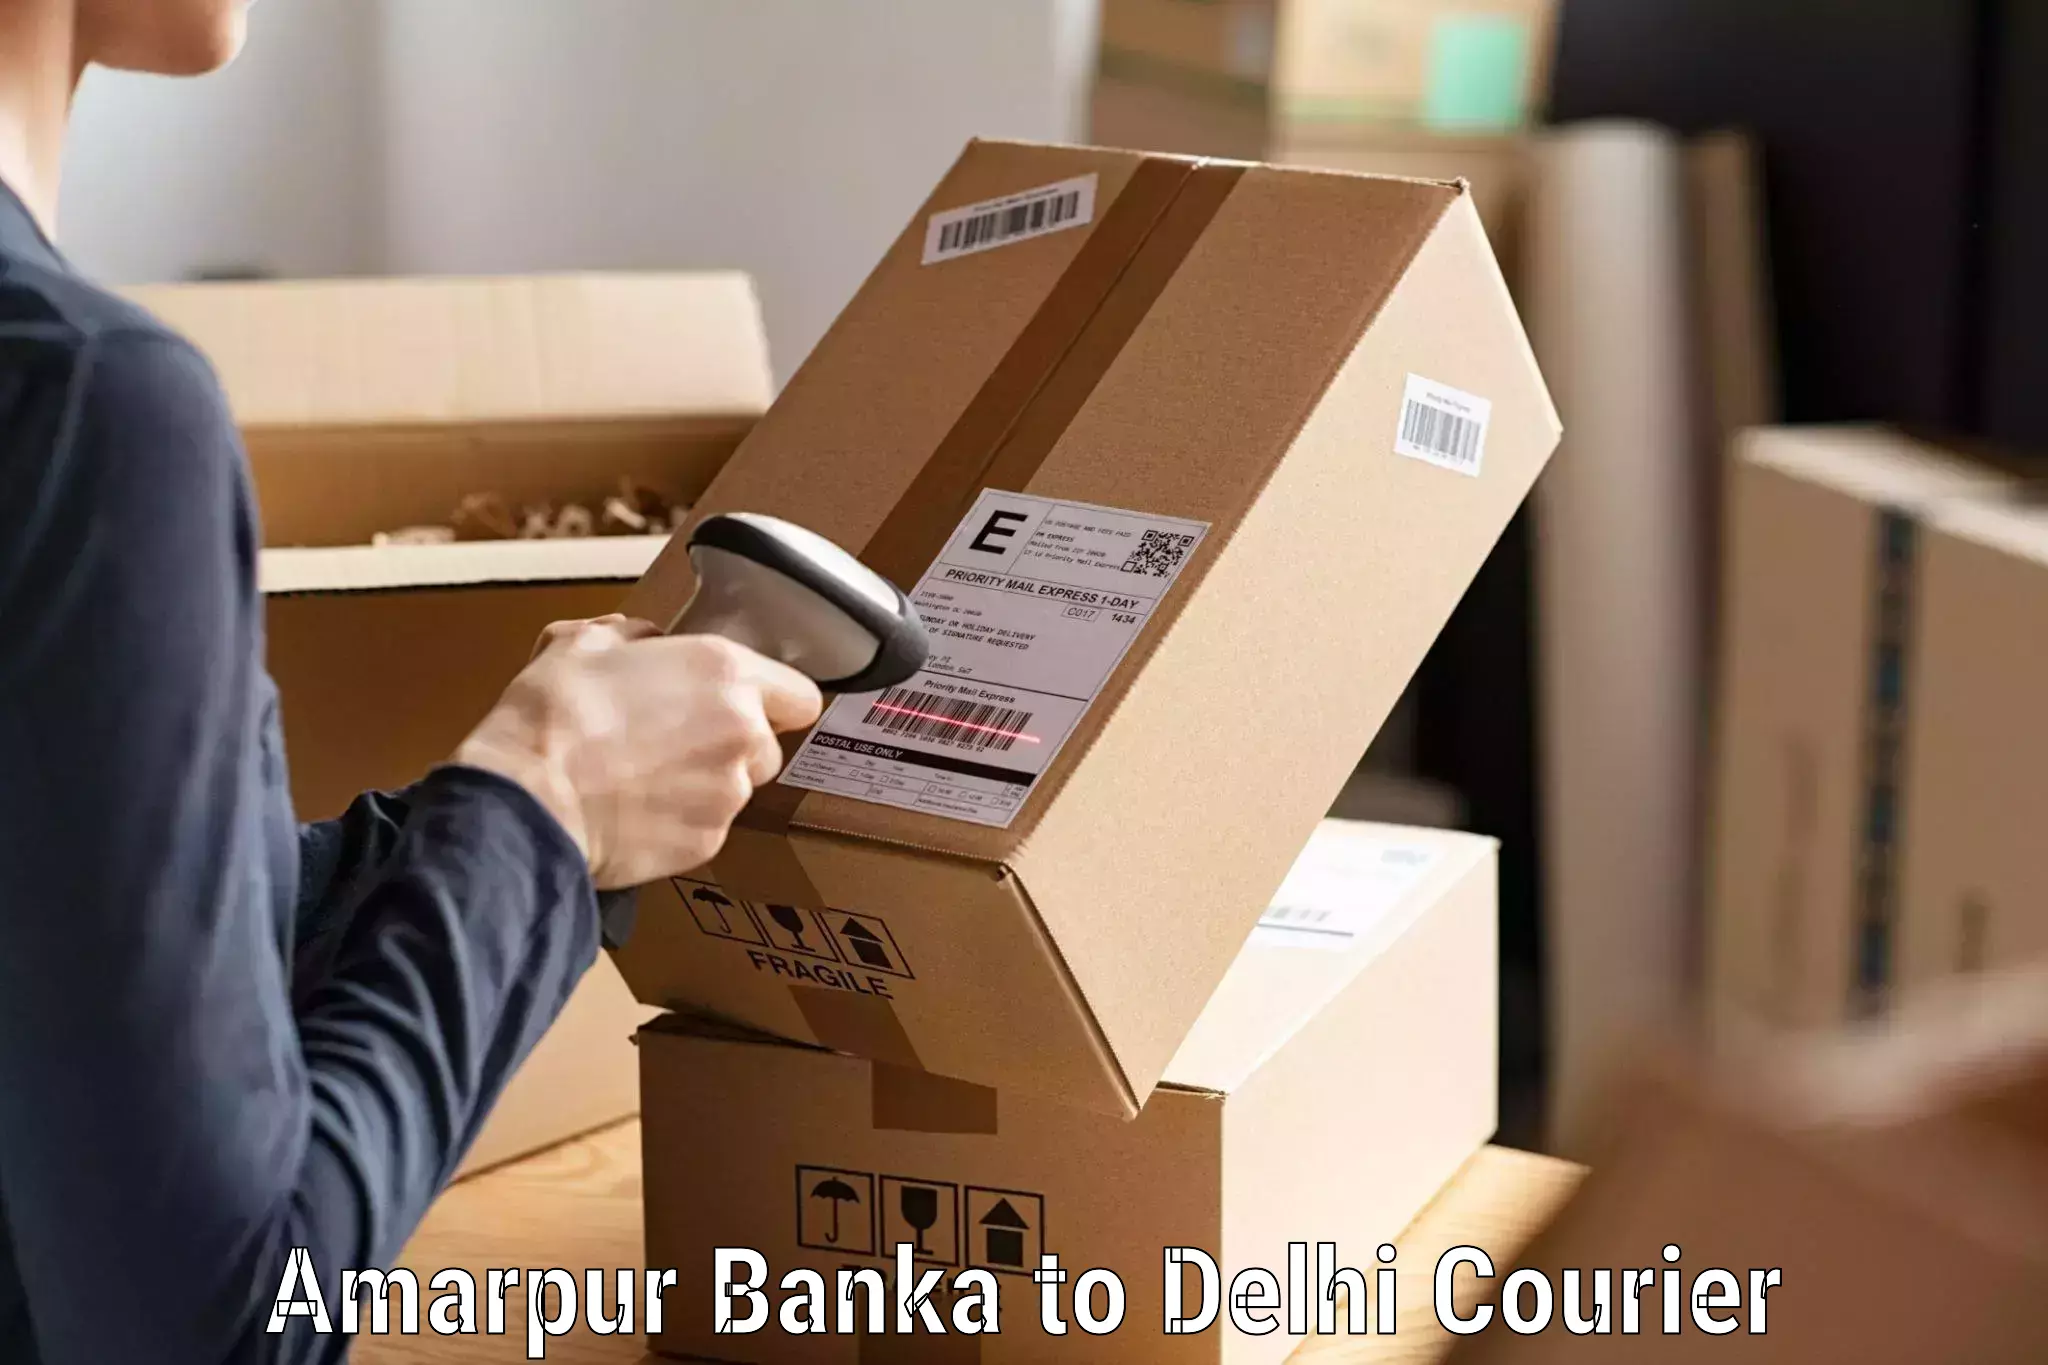 Easy return solutions Amarpur Banka to East Delhi